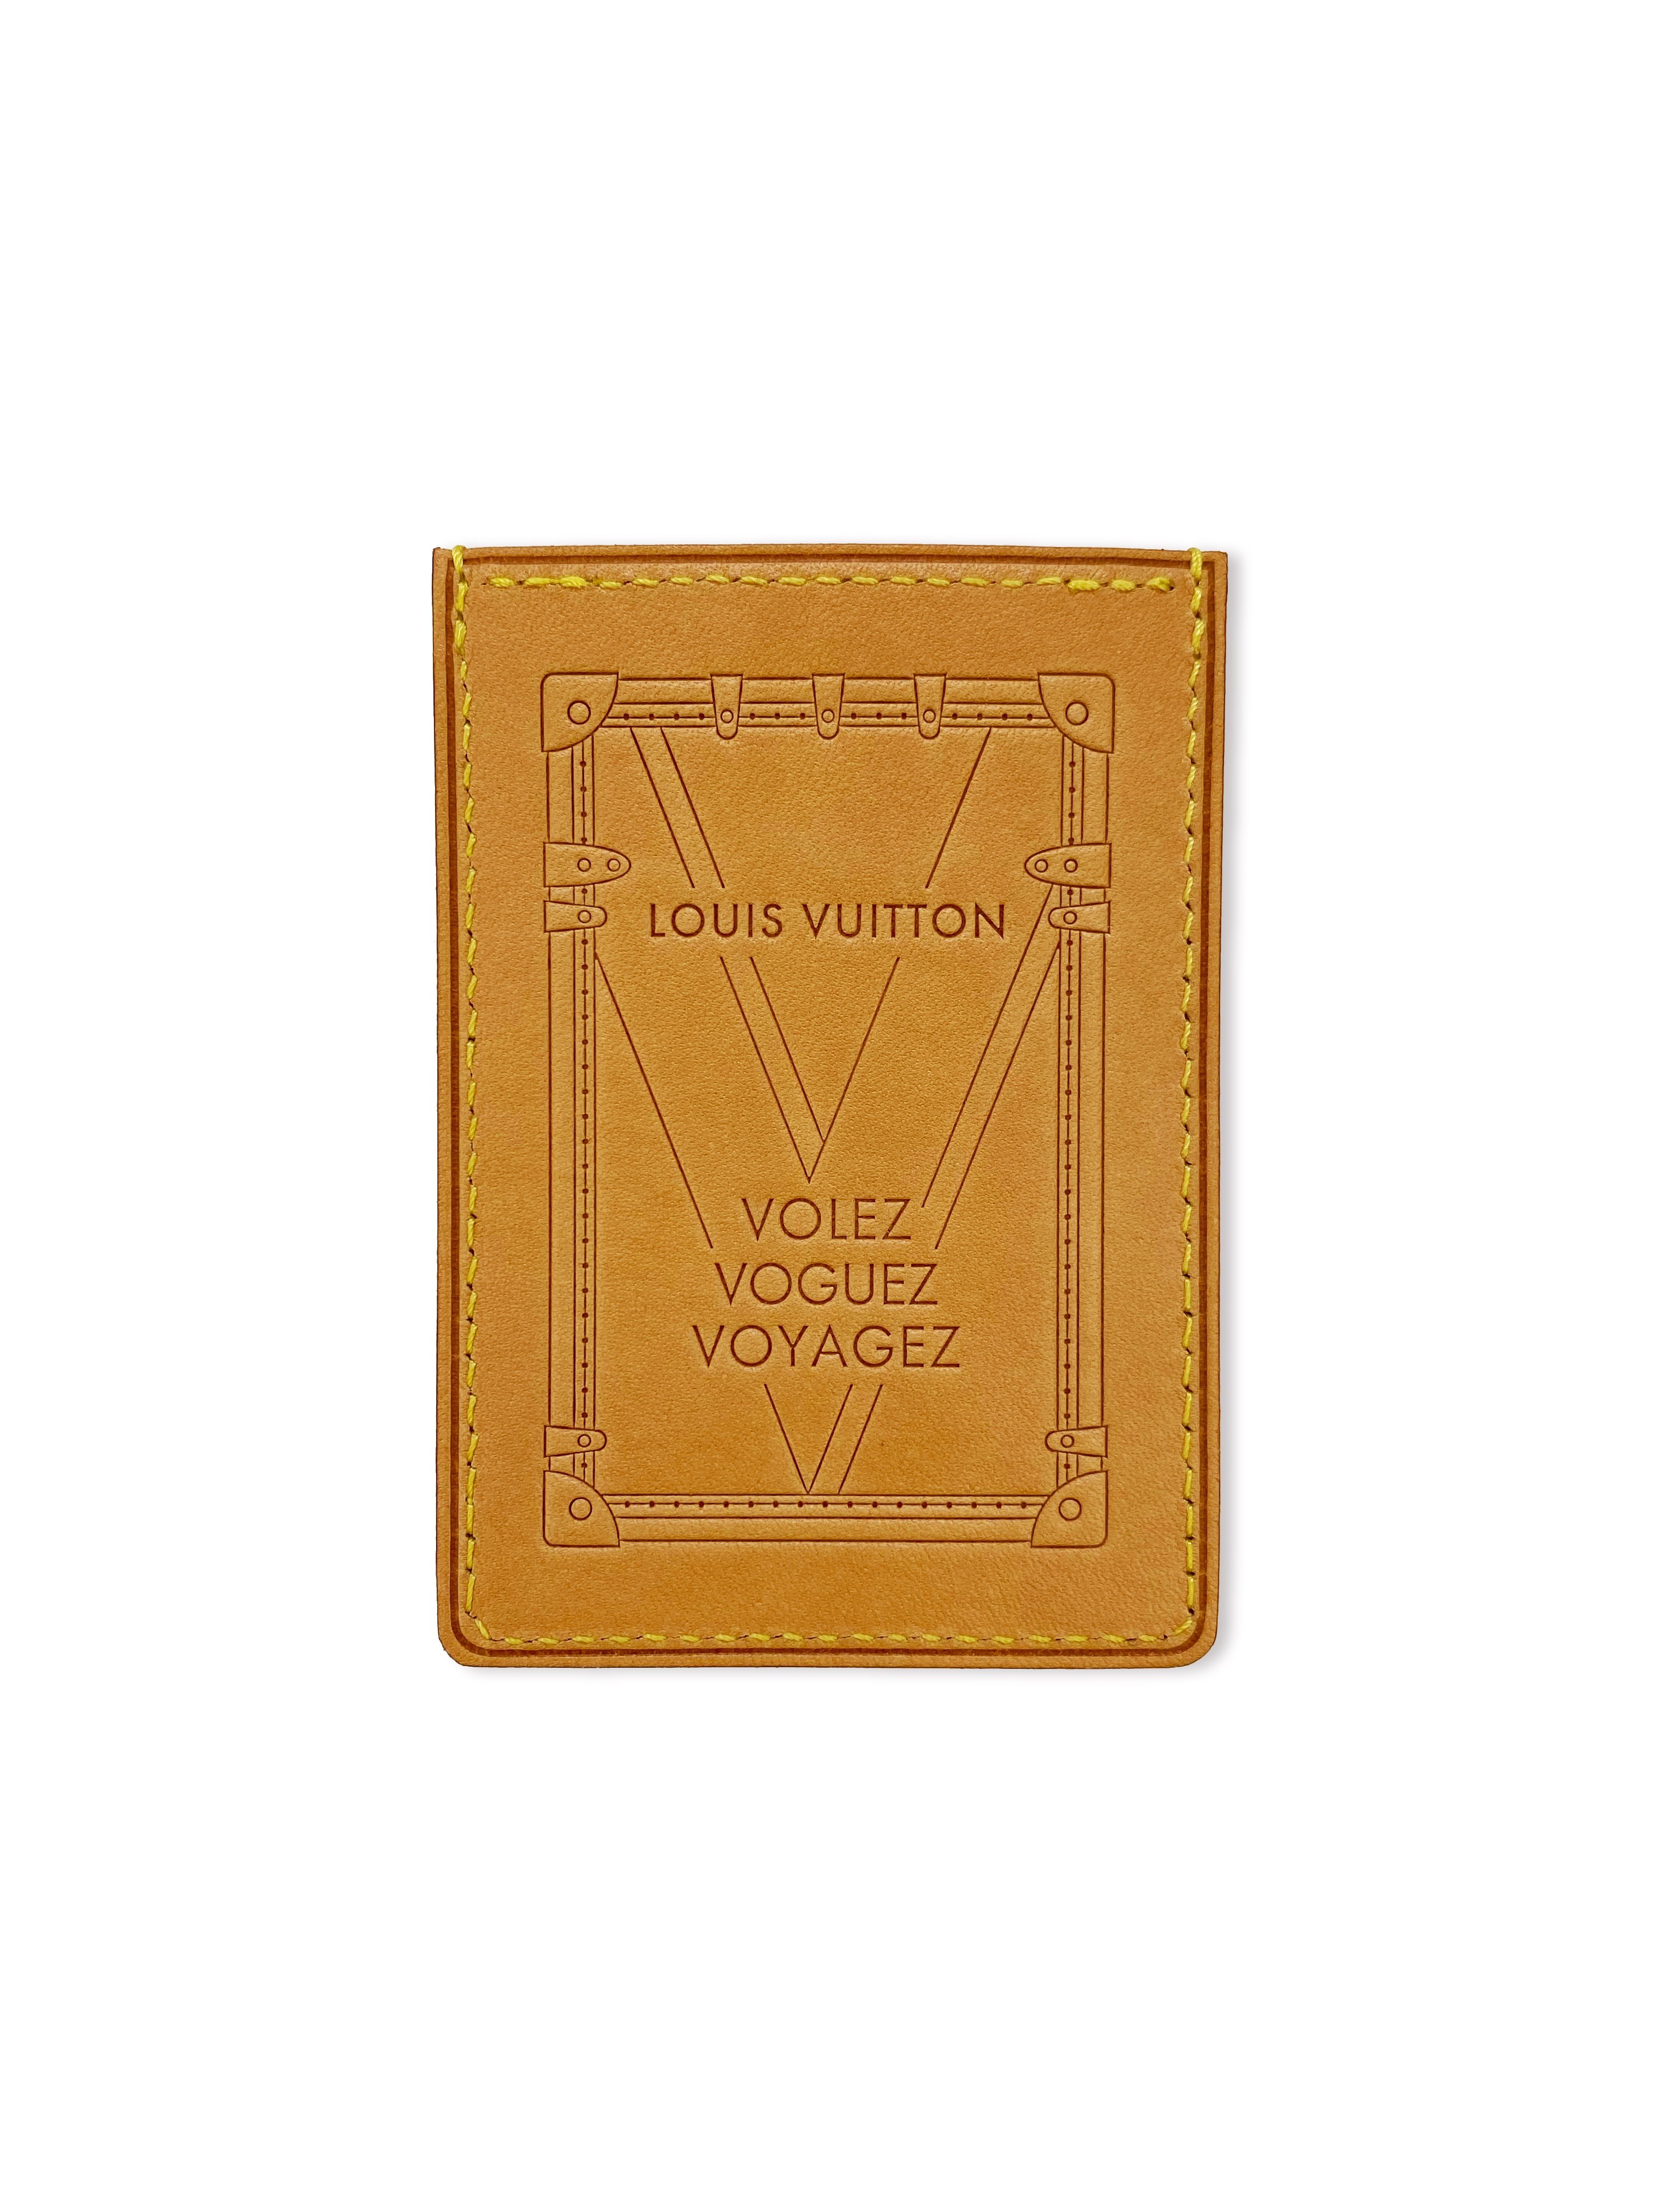 2016 Louis Vuitton Volez Vougez Voyagez Leather Card Holder